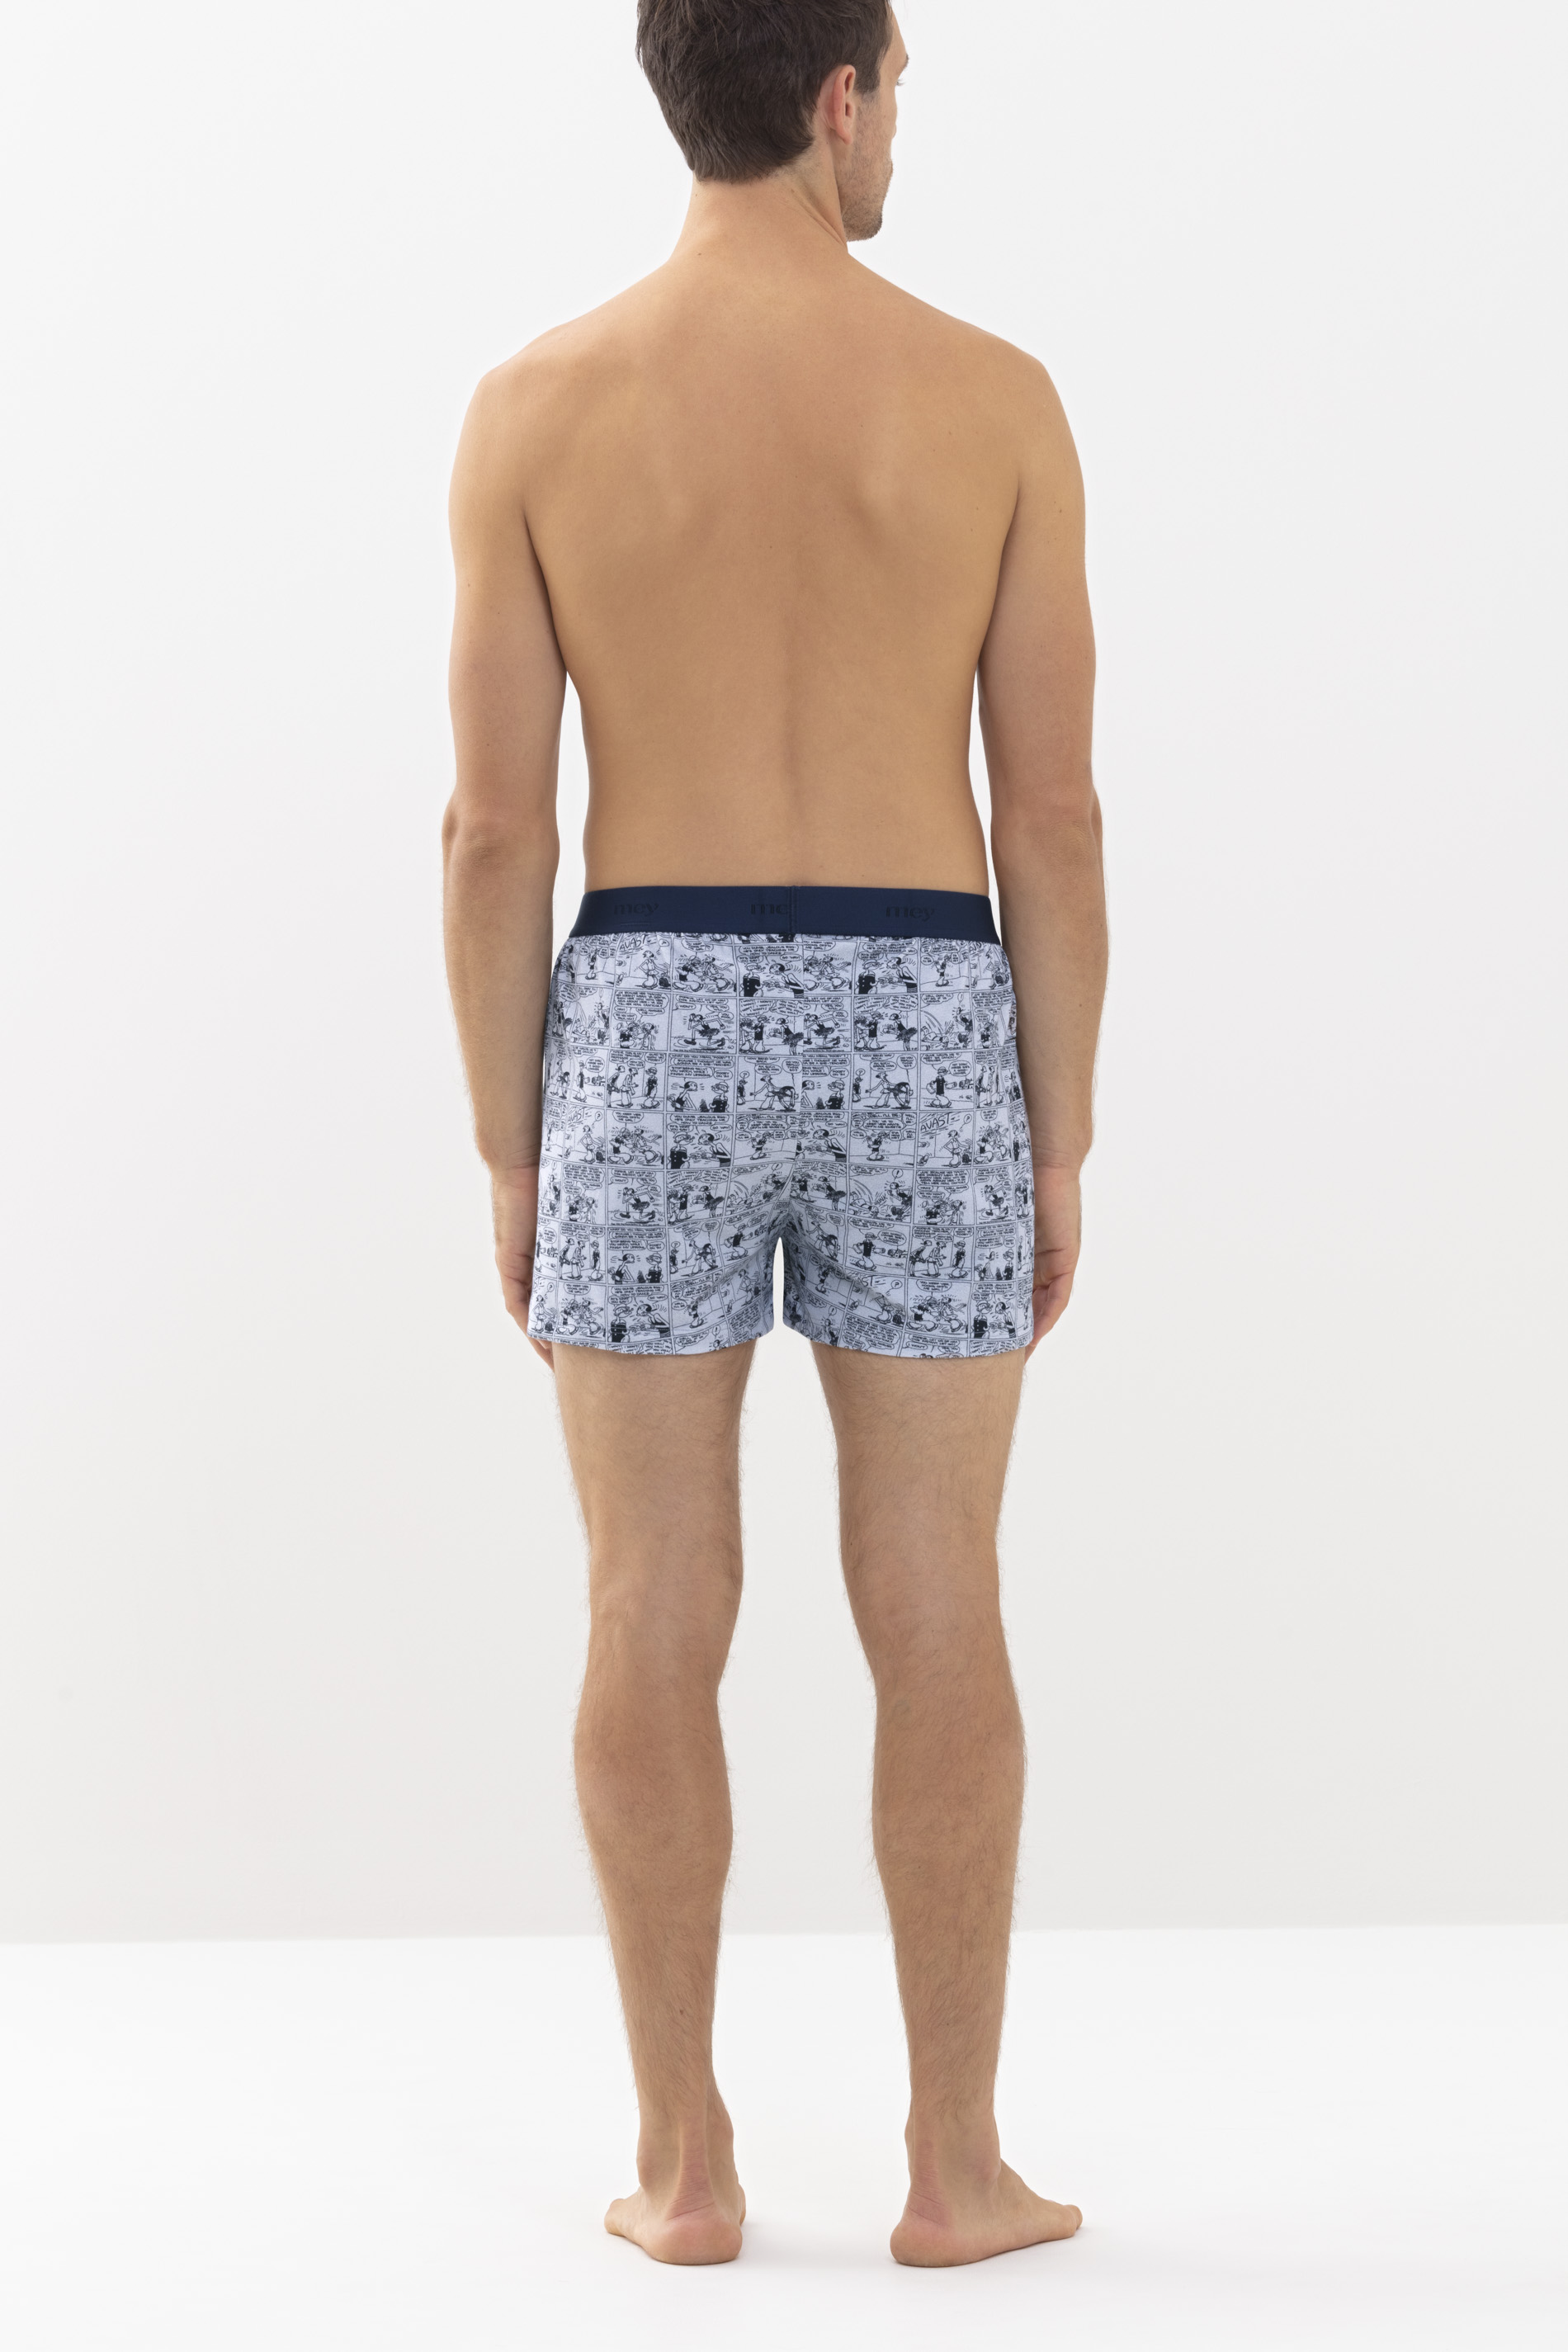 Boxer shorts Tin Grey Serie POPEYE©xMEY Rear View | mey®